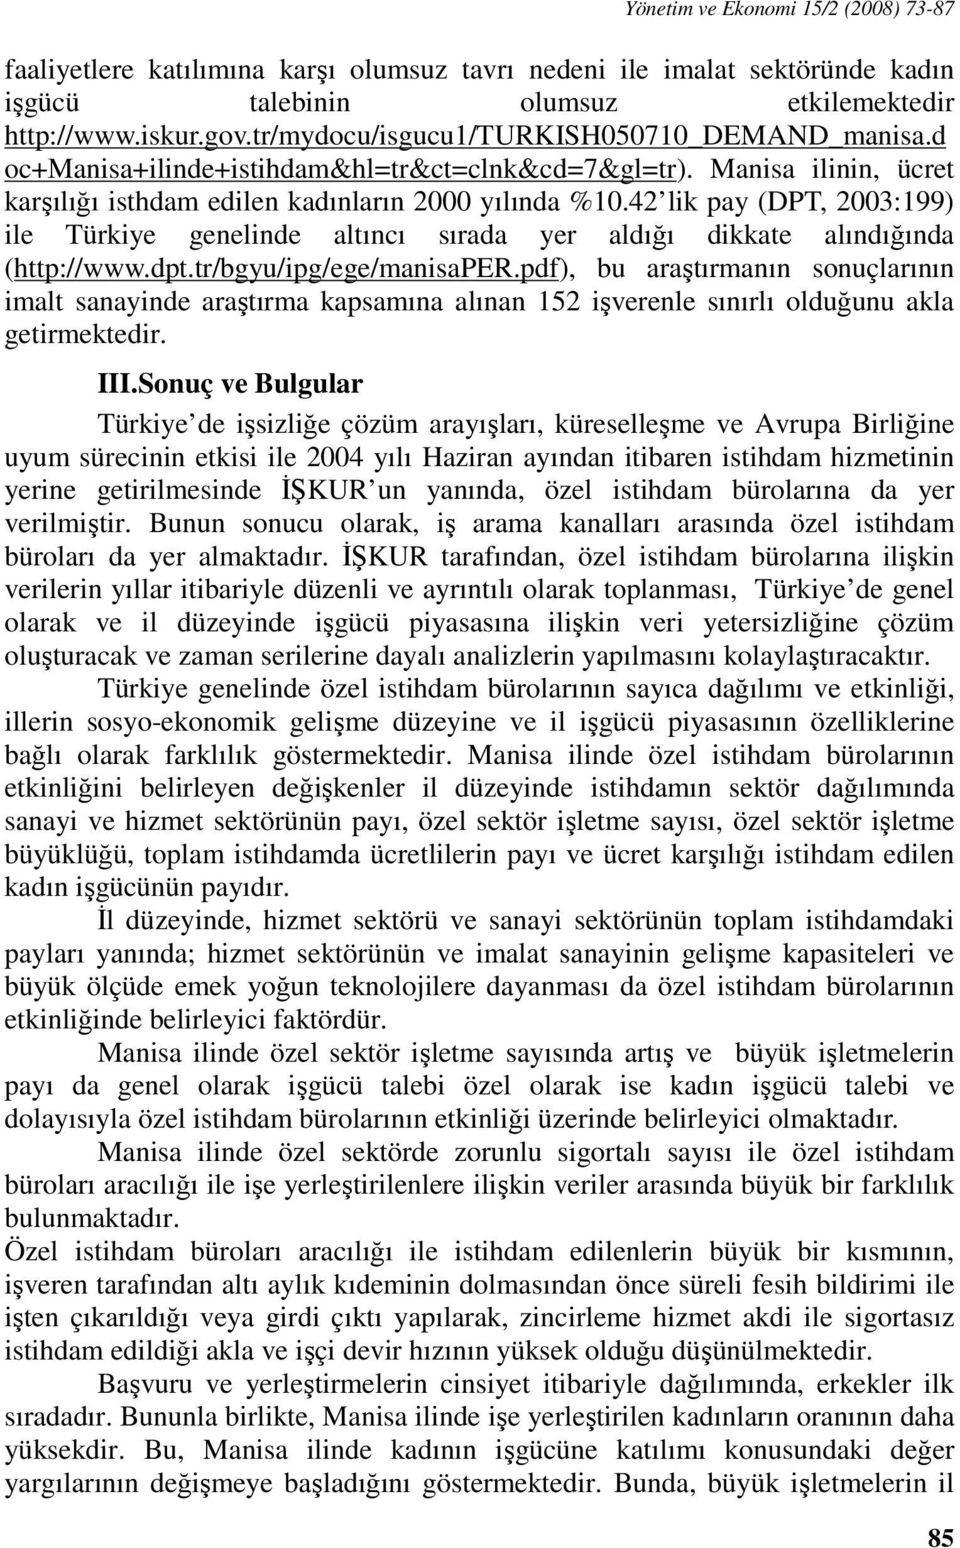 42 lik pay (DPT, 2003:199) ile Türkiye genelinde altıncı sırada yer aldığı dikkate alındığında (http://www.dpt.tr/bgyu/ipg/ege/manisaper.